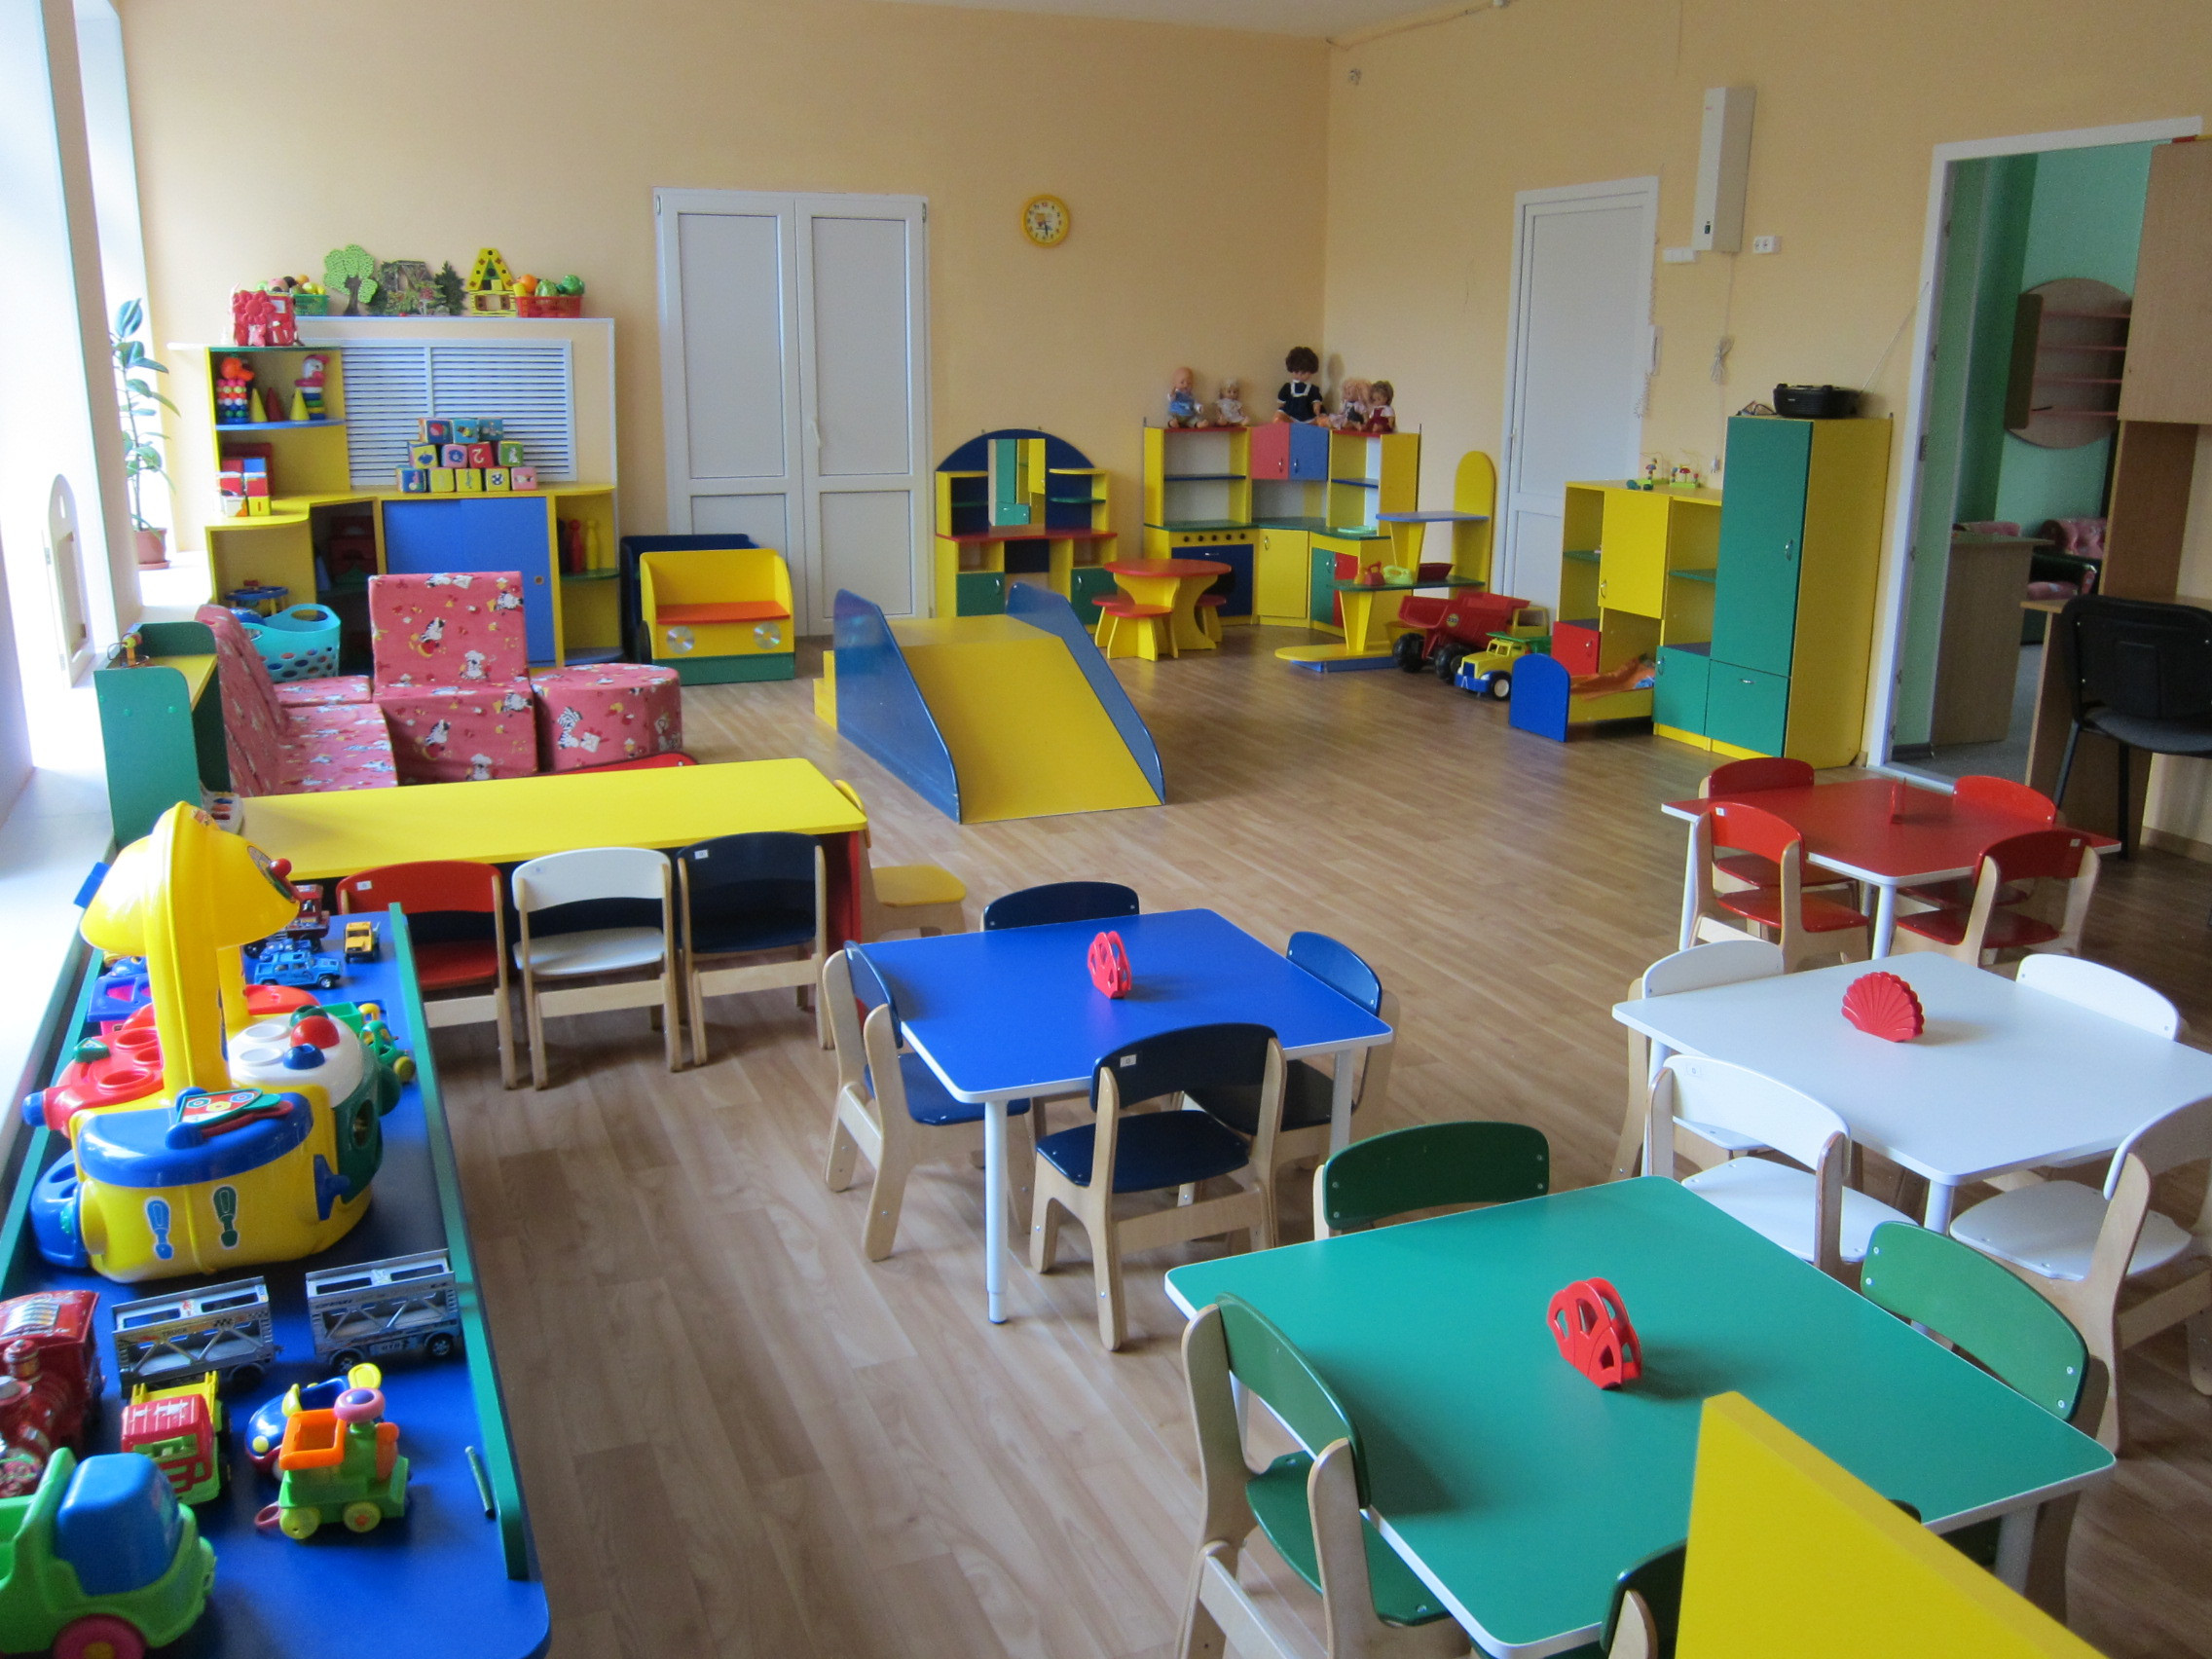 Новая группа детского сада. Ясельная группа в детском саду. Мебель для ясельной группы. Расстановка мебели в детском саду. Мебель для ясельной группы детского сада.